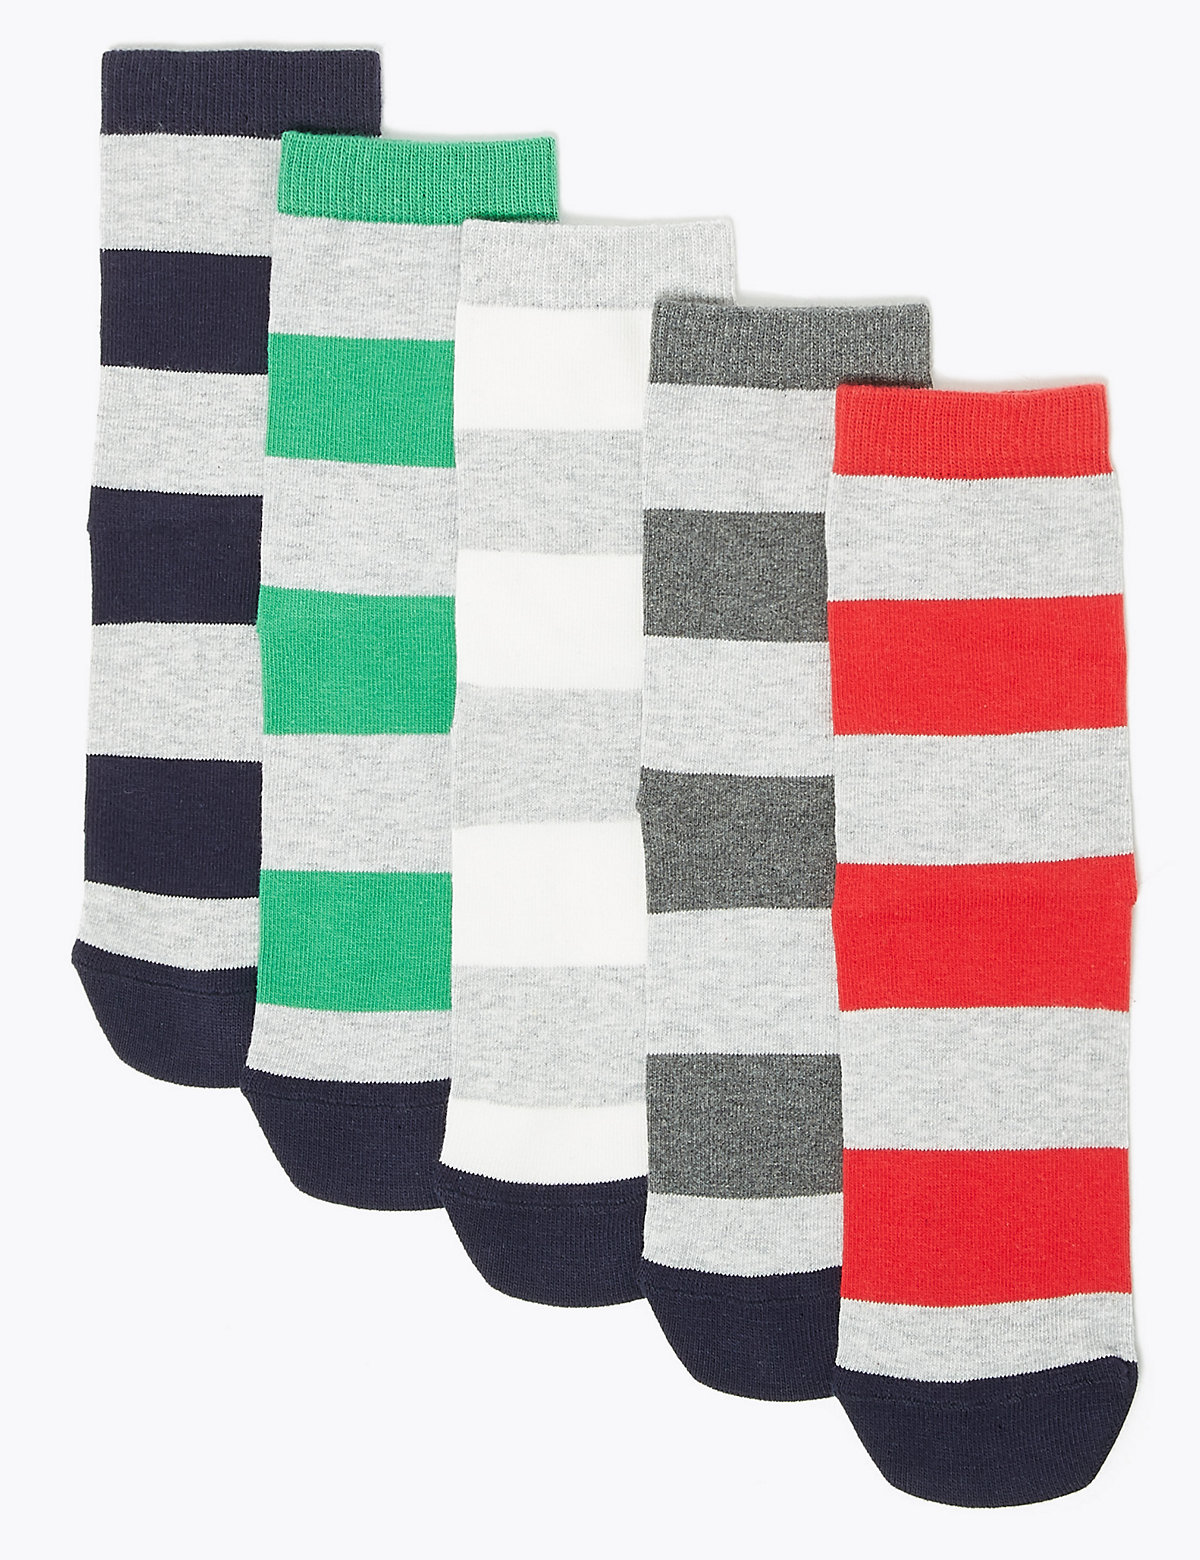 5 Pack of Striped Socks